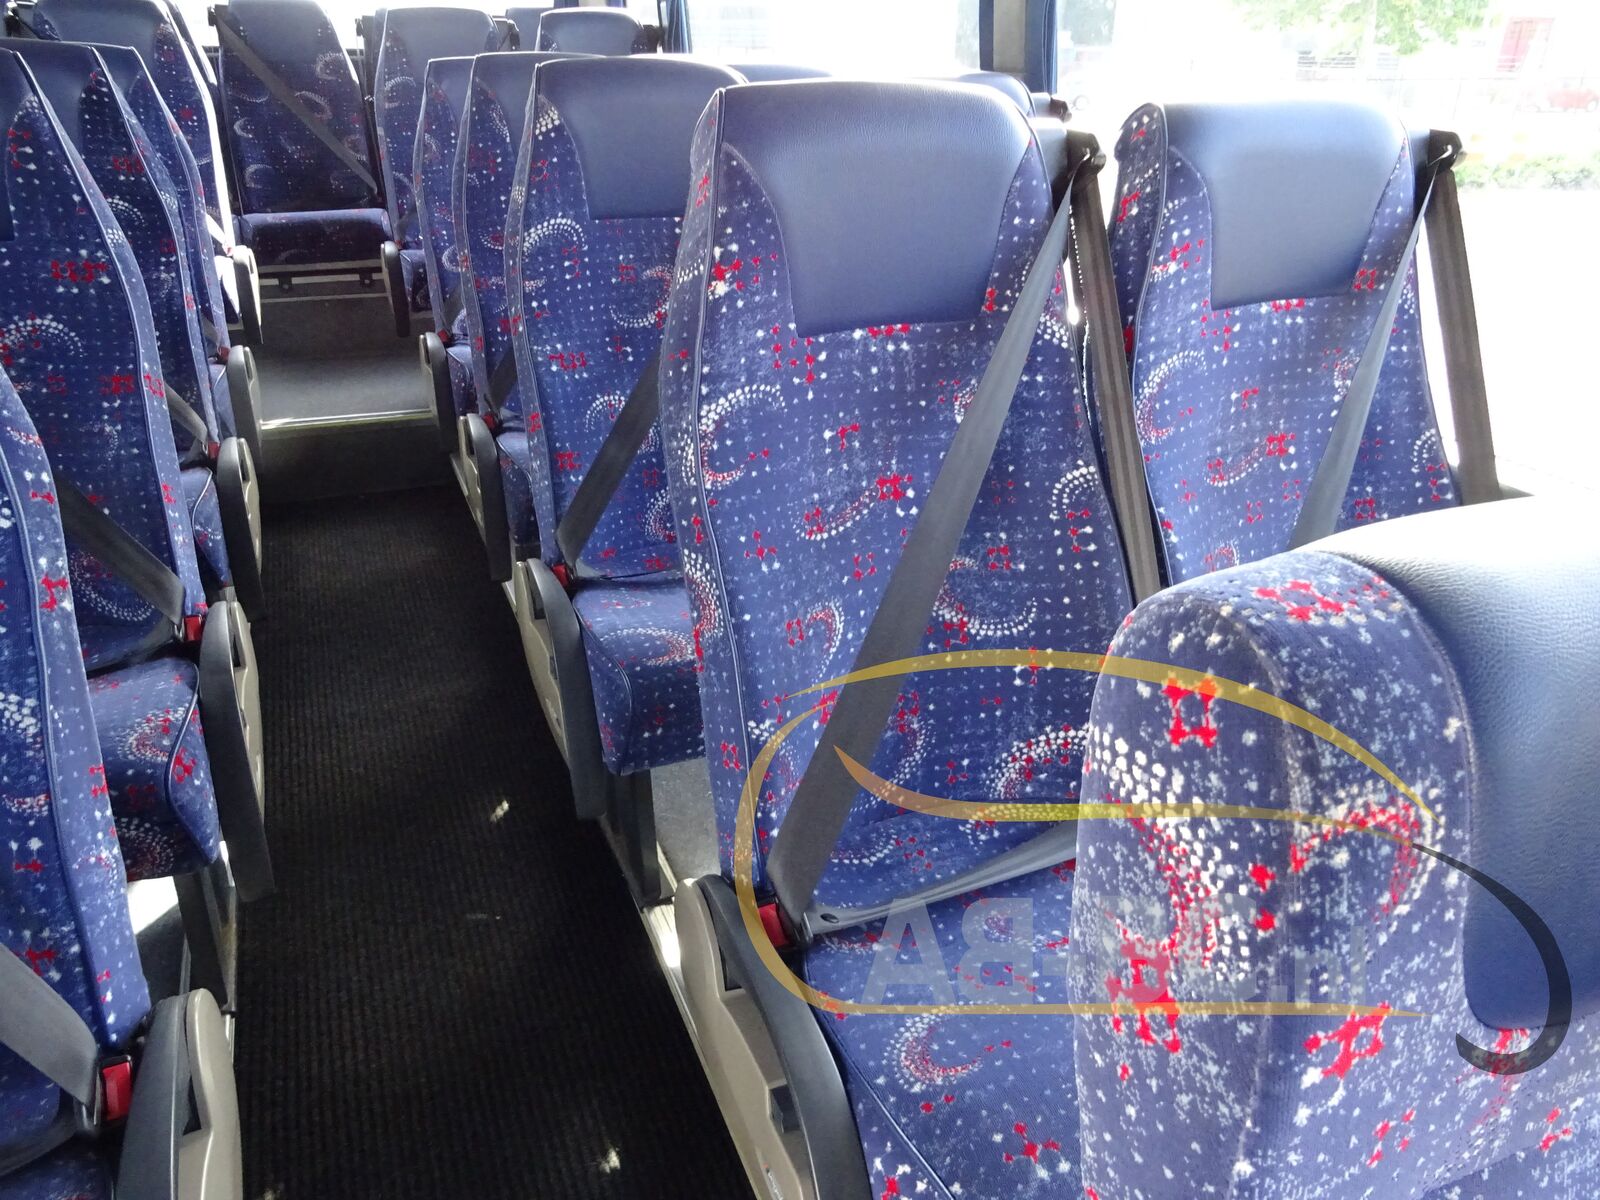 coach-bus-SCANIA-K400-Beulas-52-Seats-Liftbus-EURO-5---1655455481297852383_orig_76c7cab175ec60396da6249f91e4effc--22060715555758532500